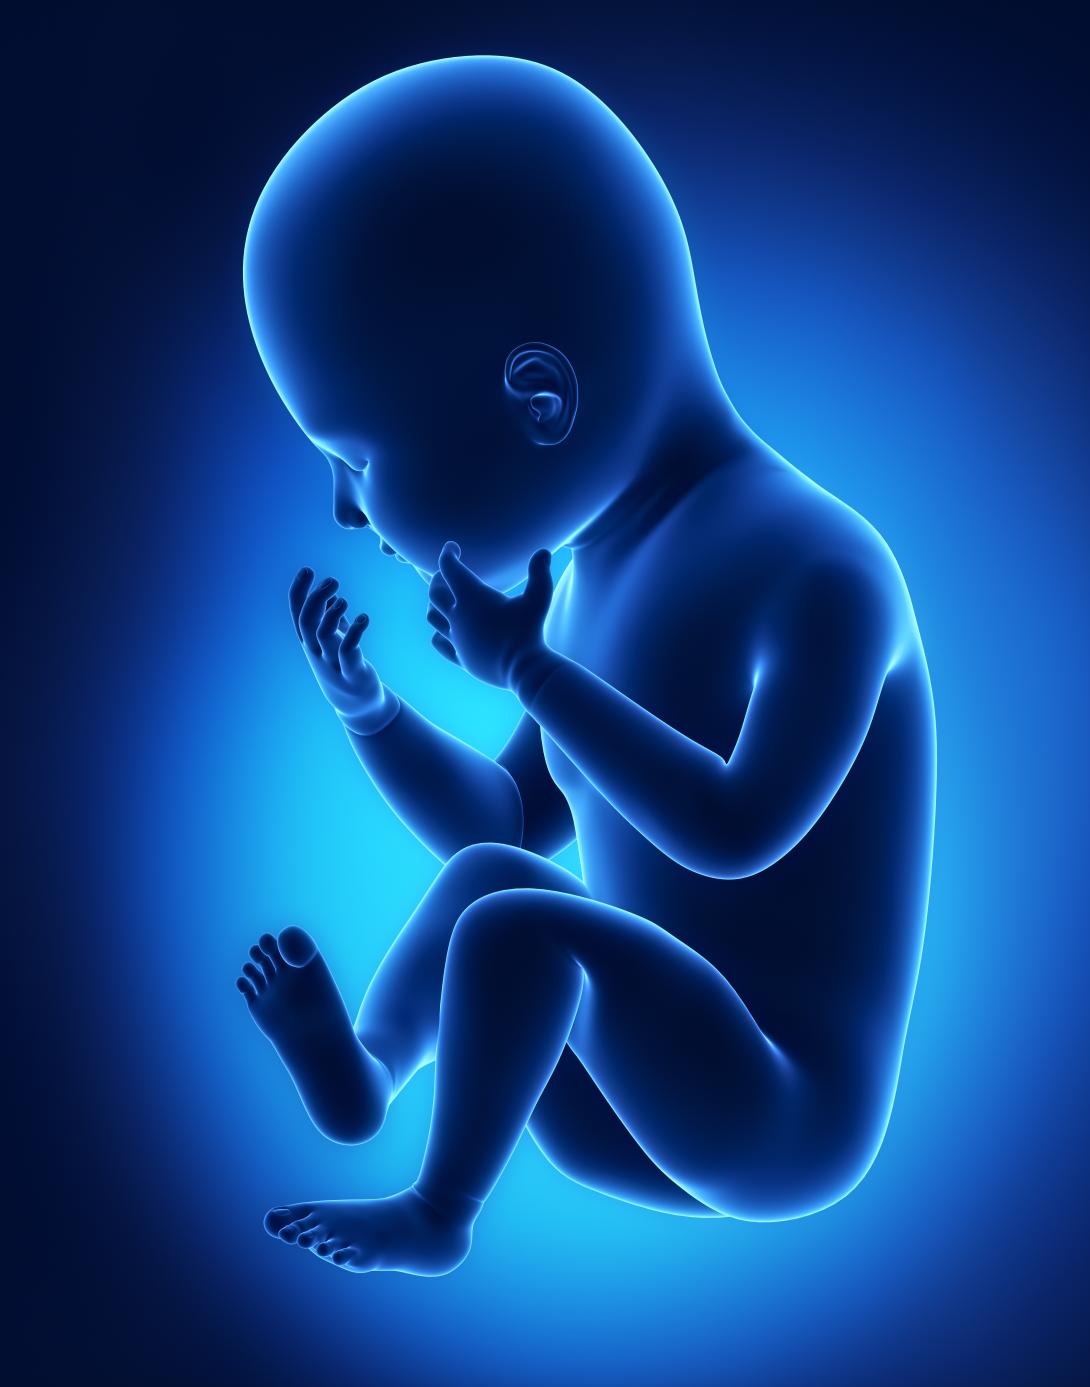 ¿Y el milagro de la vida? Se aprobó la modificación genética de embriones humanos. -0